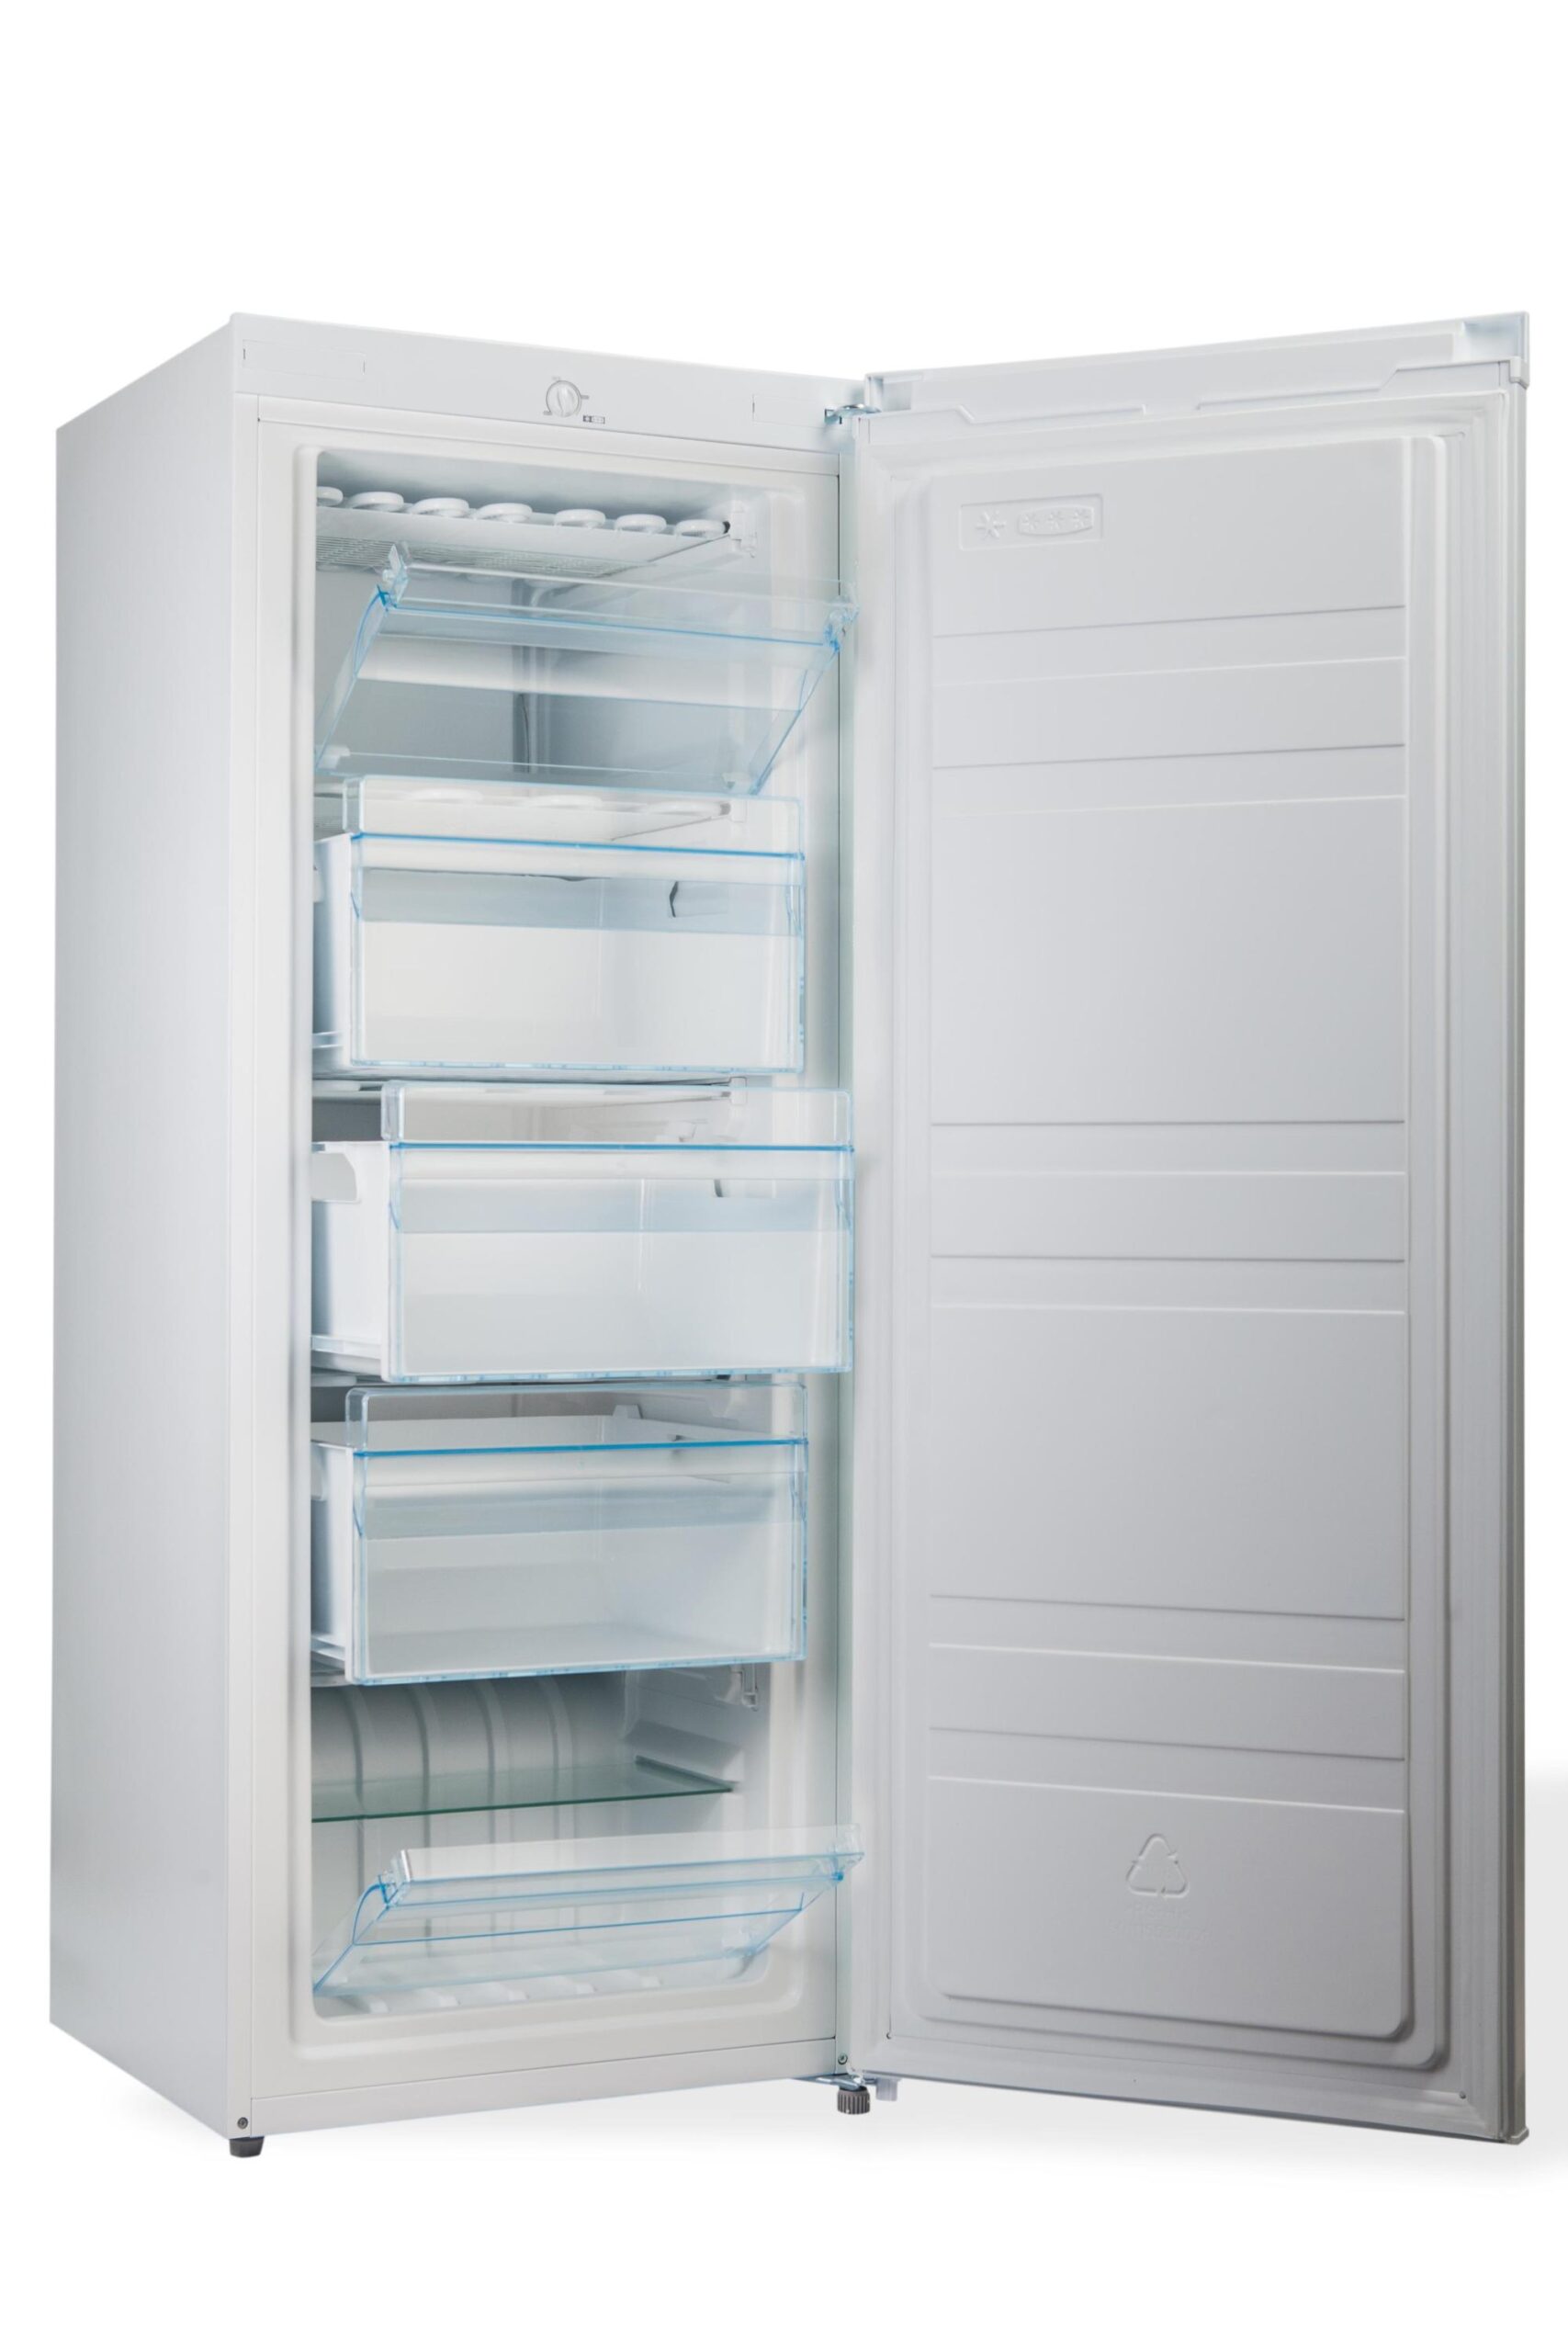 PremierTech PT-FR153 Congelatore Verticale Freezer 160 litri -24°gradi Classe E 4**** Stelle 3 Cassetti e 2 Sportelli 343398